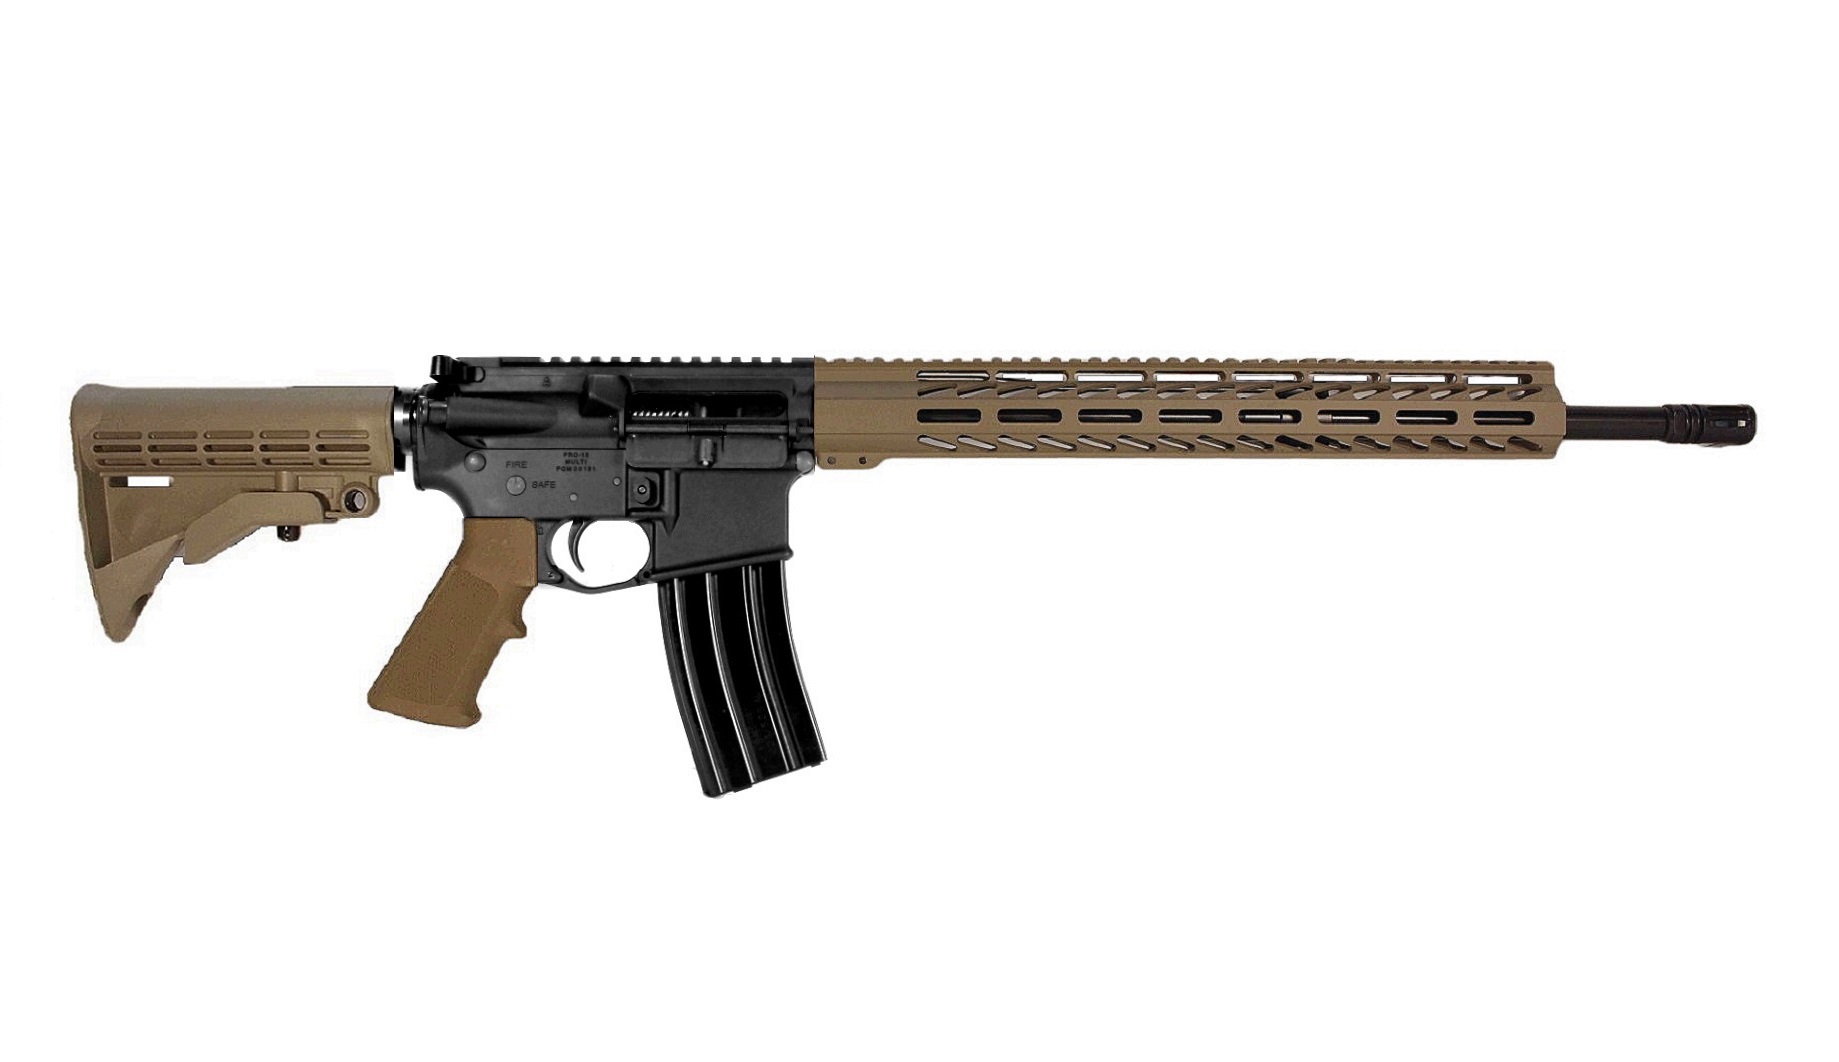 18 inch 6mm ARC AR15 Rifle in BLK/FDE